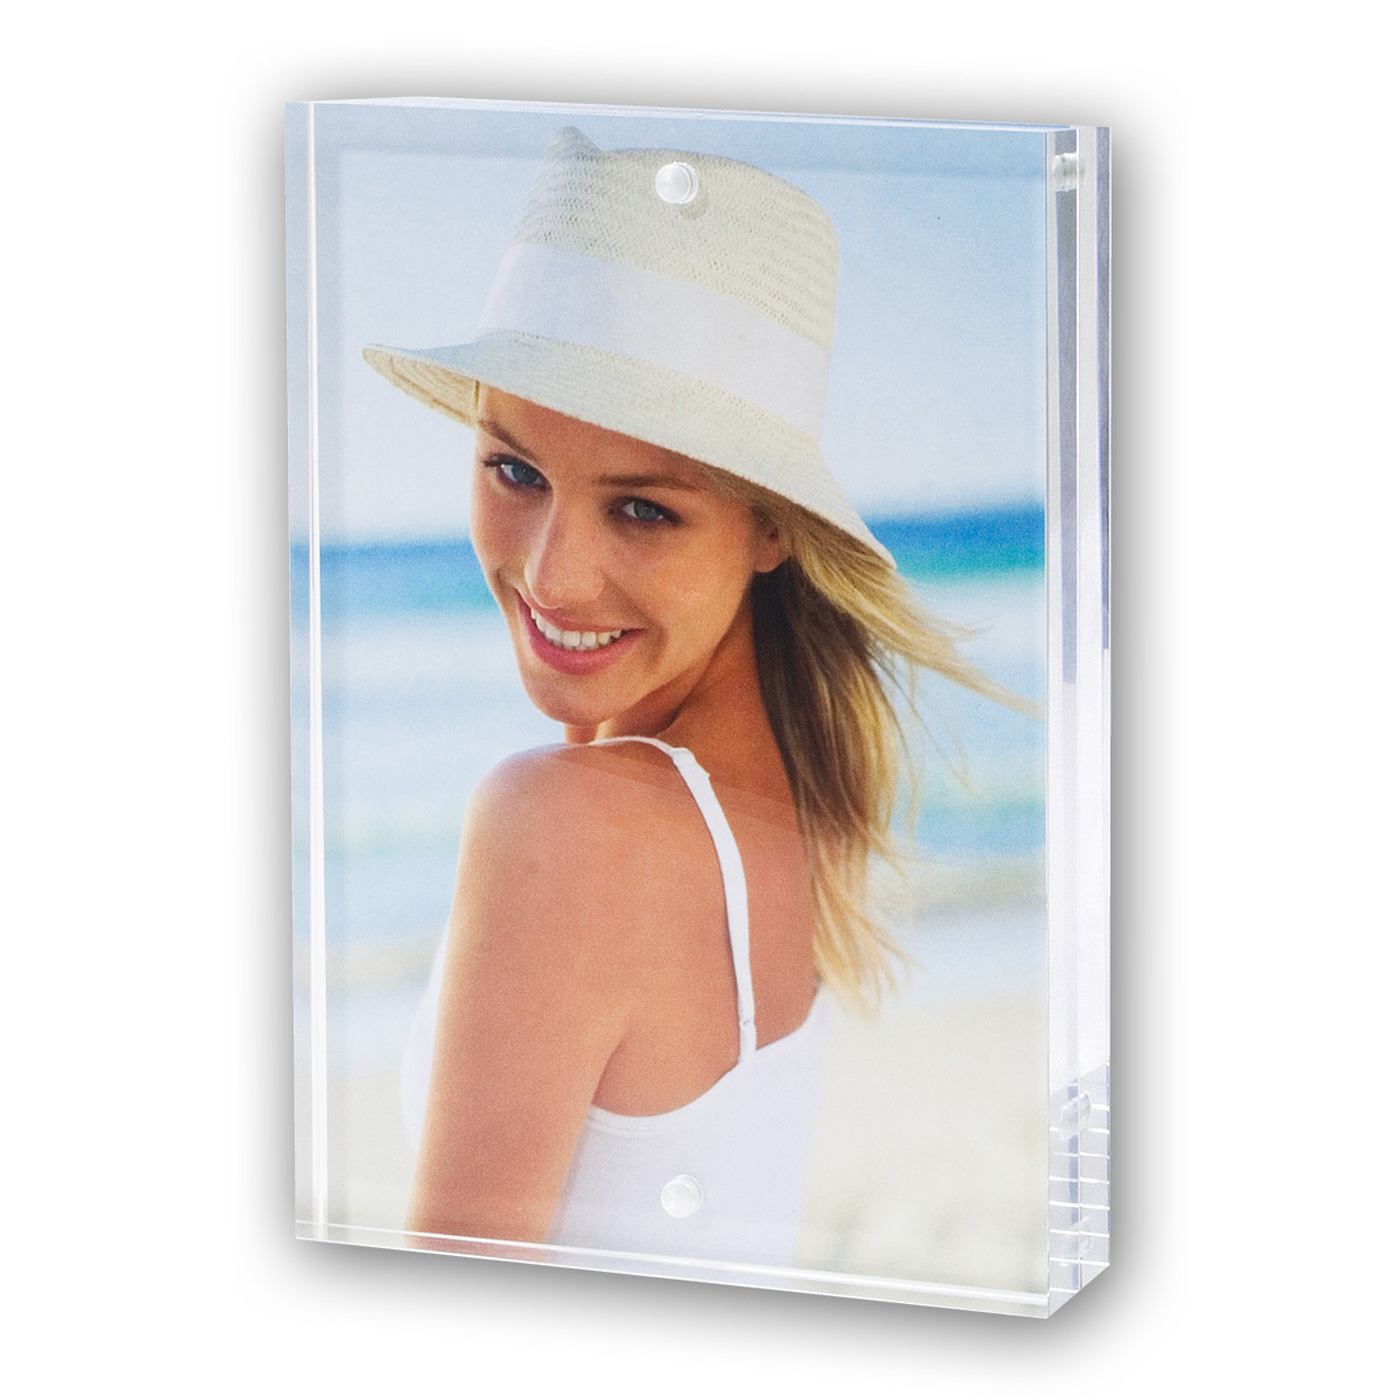 Acryl fotolijst transparant met magnetisch frame geschikt voor een foto van 10 x 15 cm